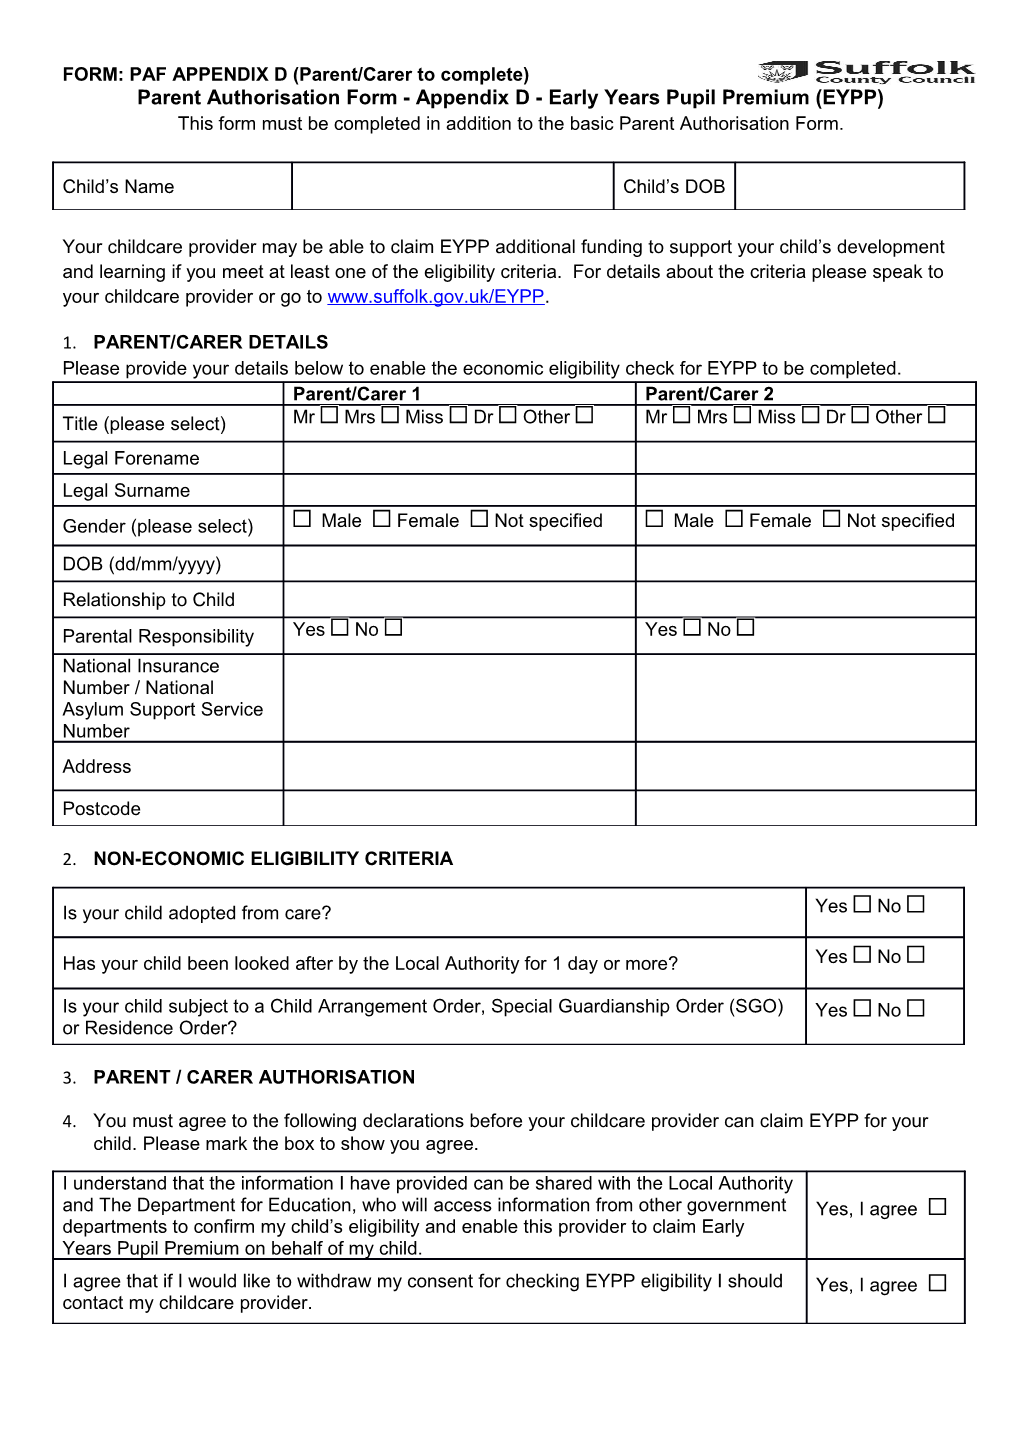 Parent Authorisation Form - Appendix D- Early Years Pupil Premium (EYPP)